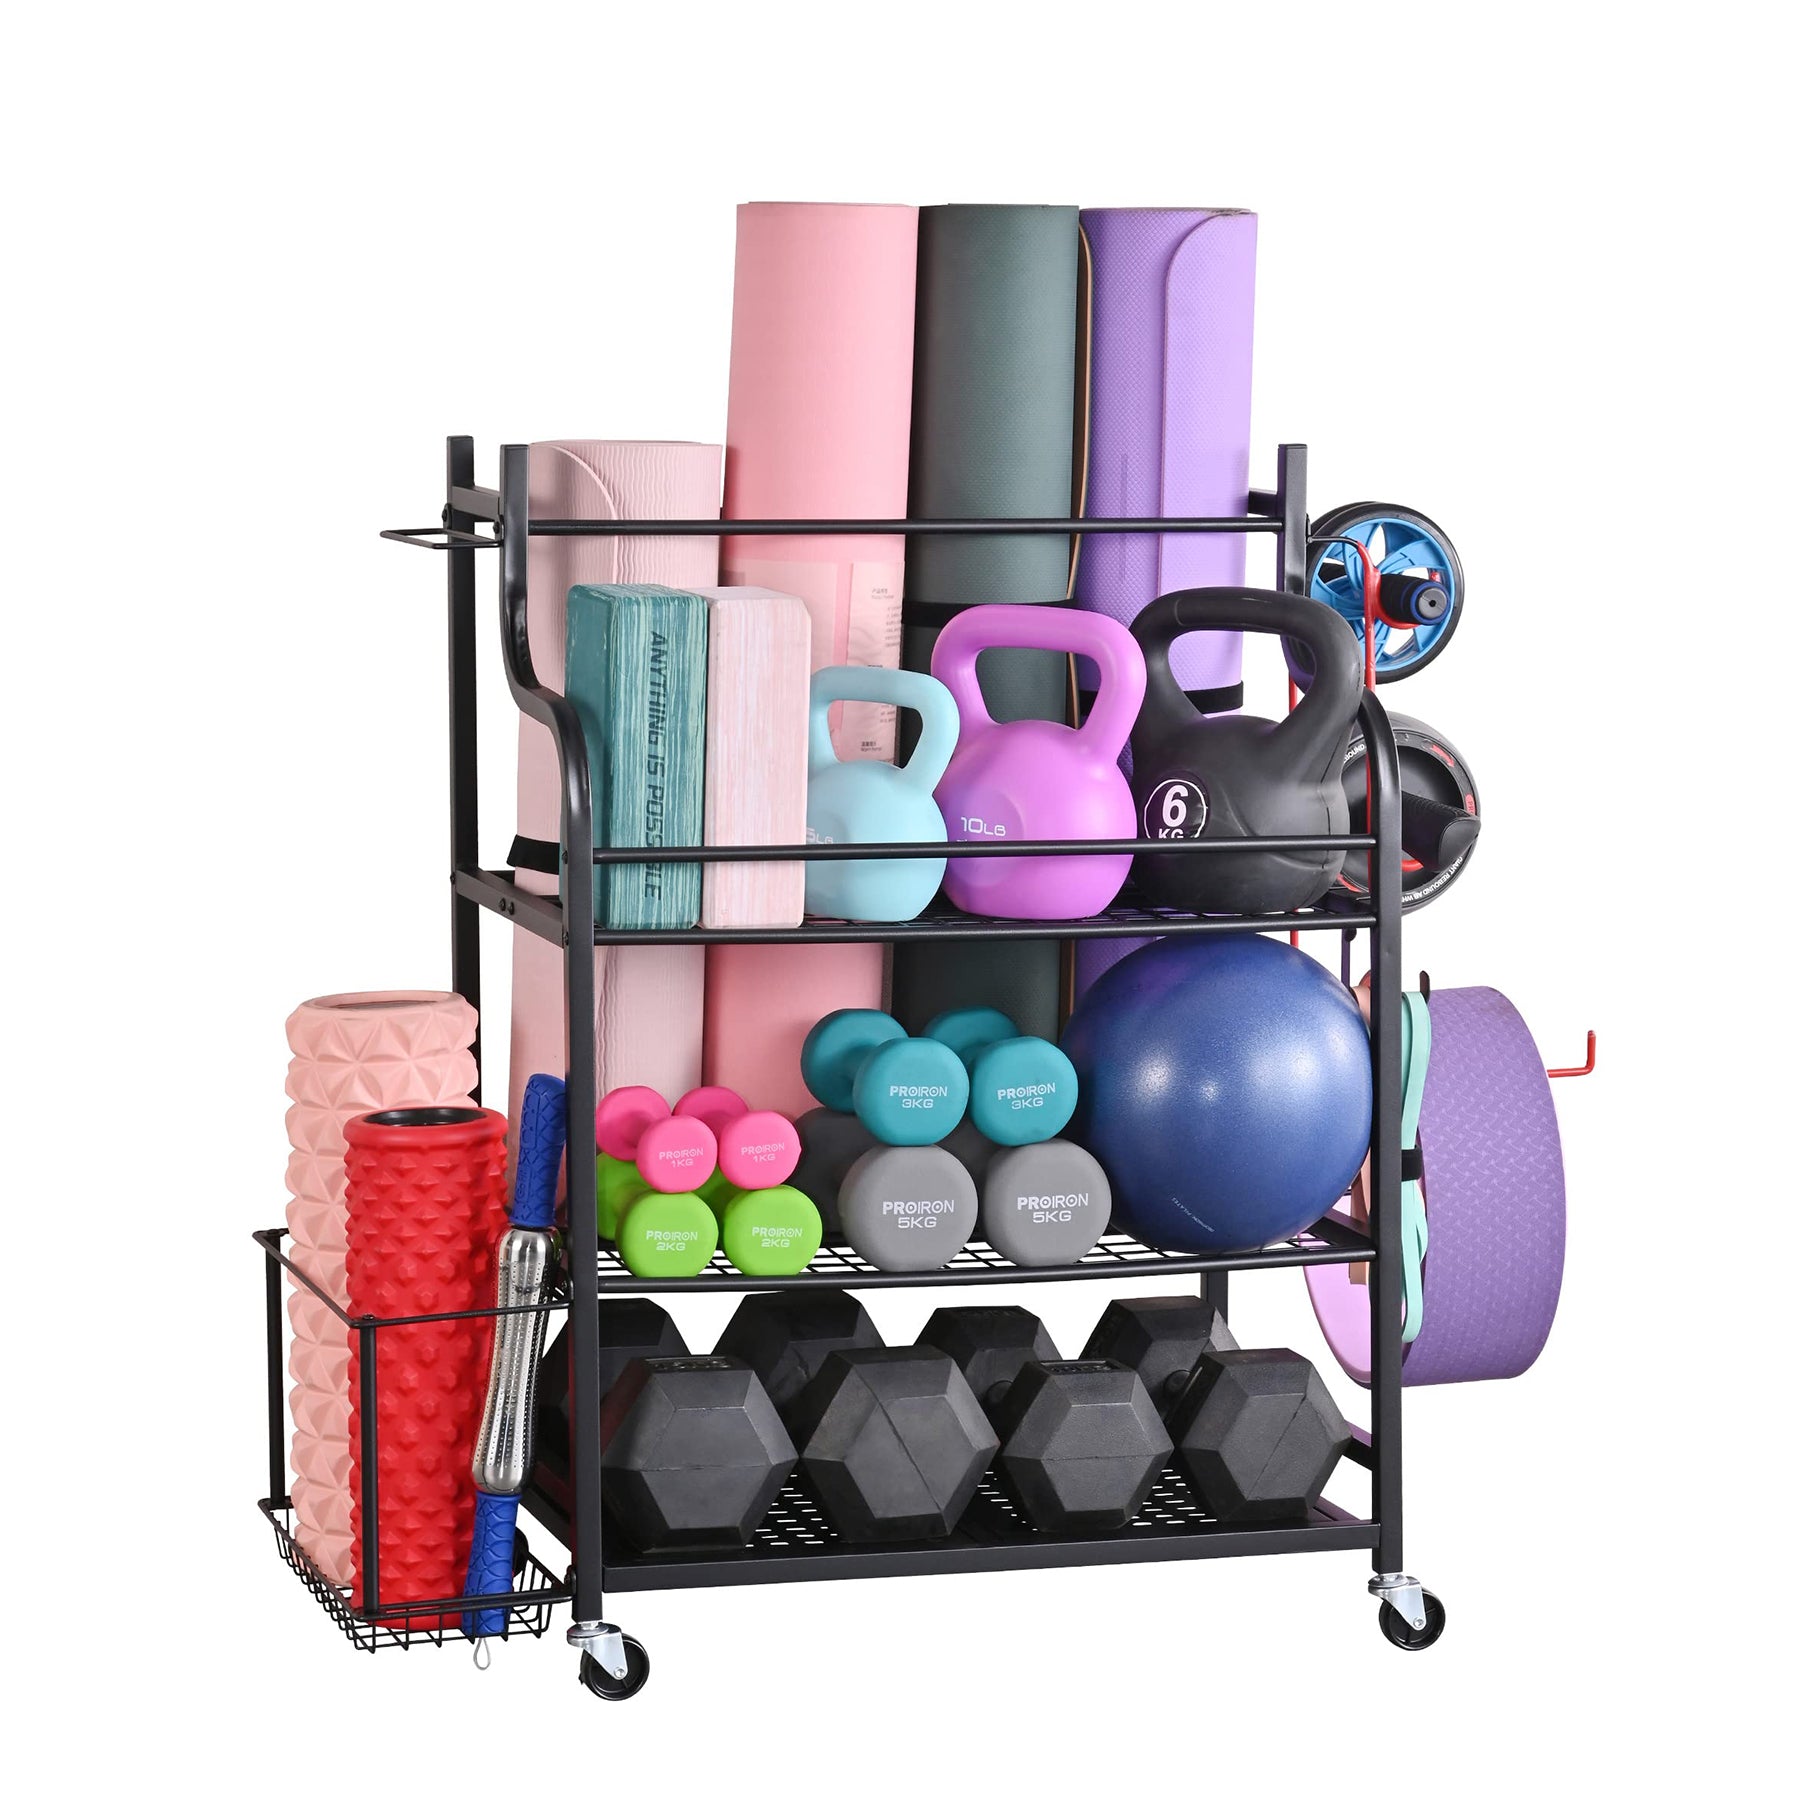 販売中の商品 MM MELISEN Yoga Mat Storage Rack， Home Gym Studio Organizer Cart  ヨガマット